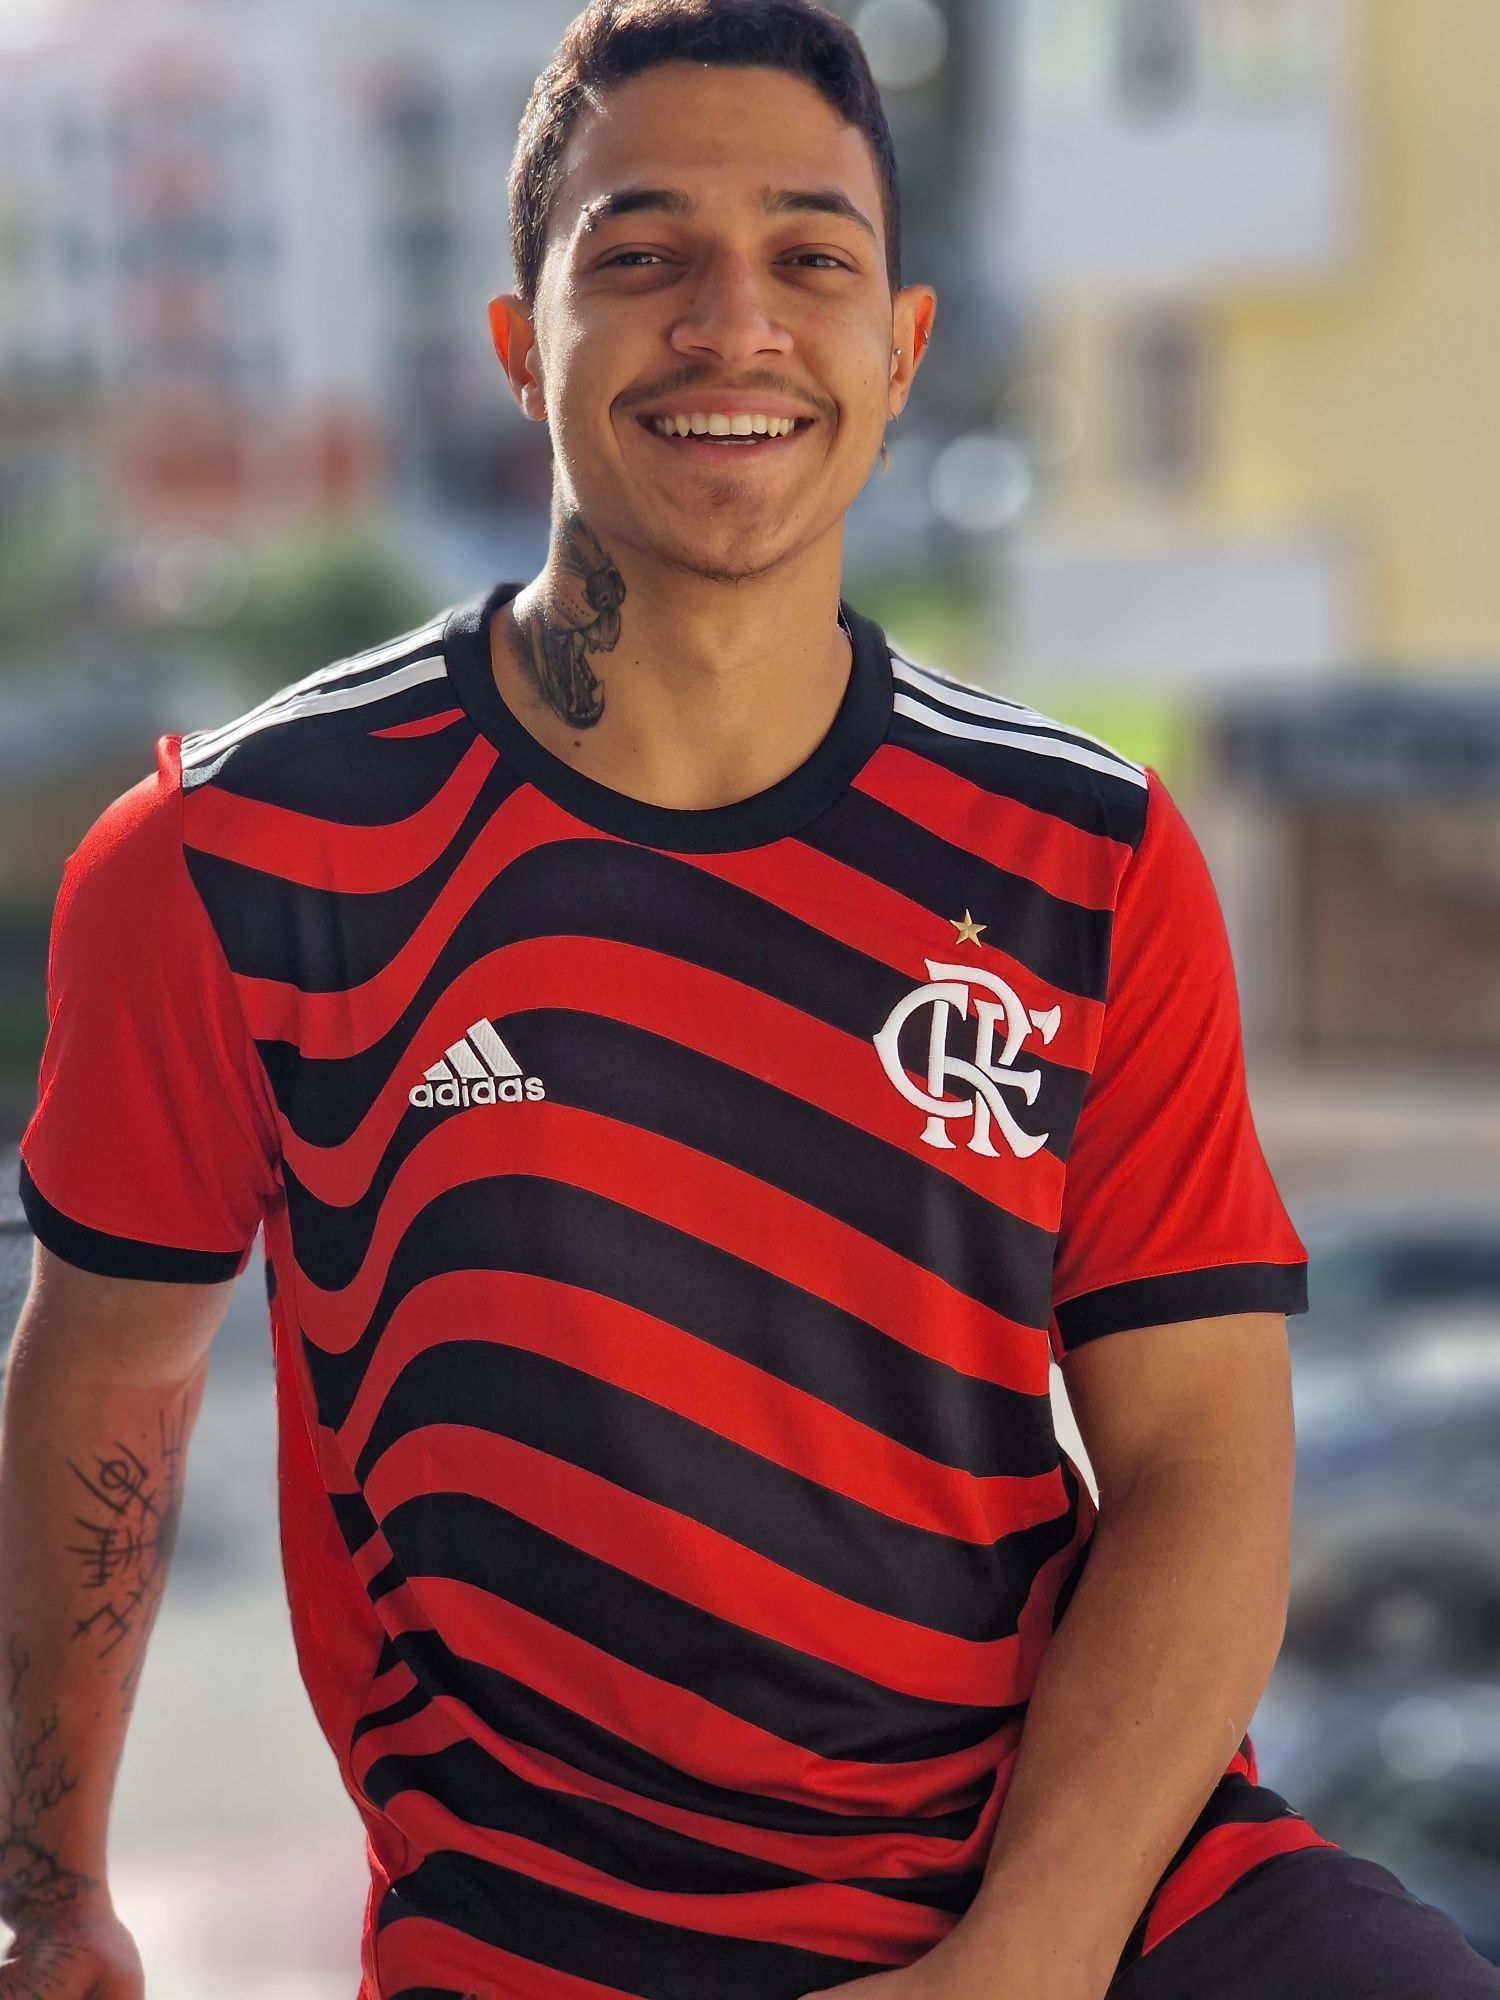 Camisa do Flamengo Top demais